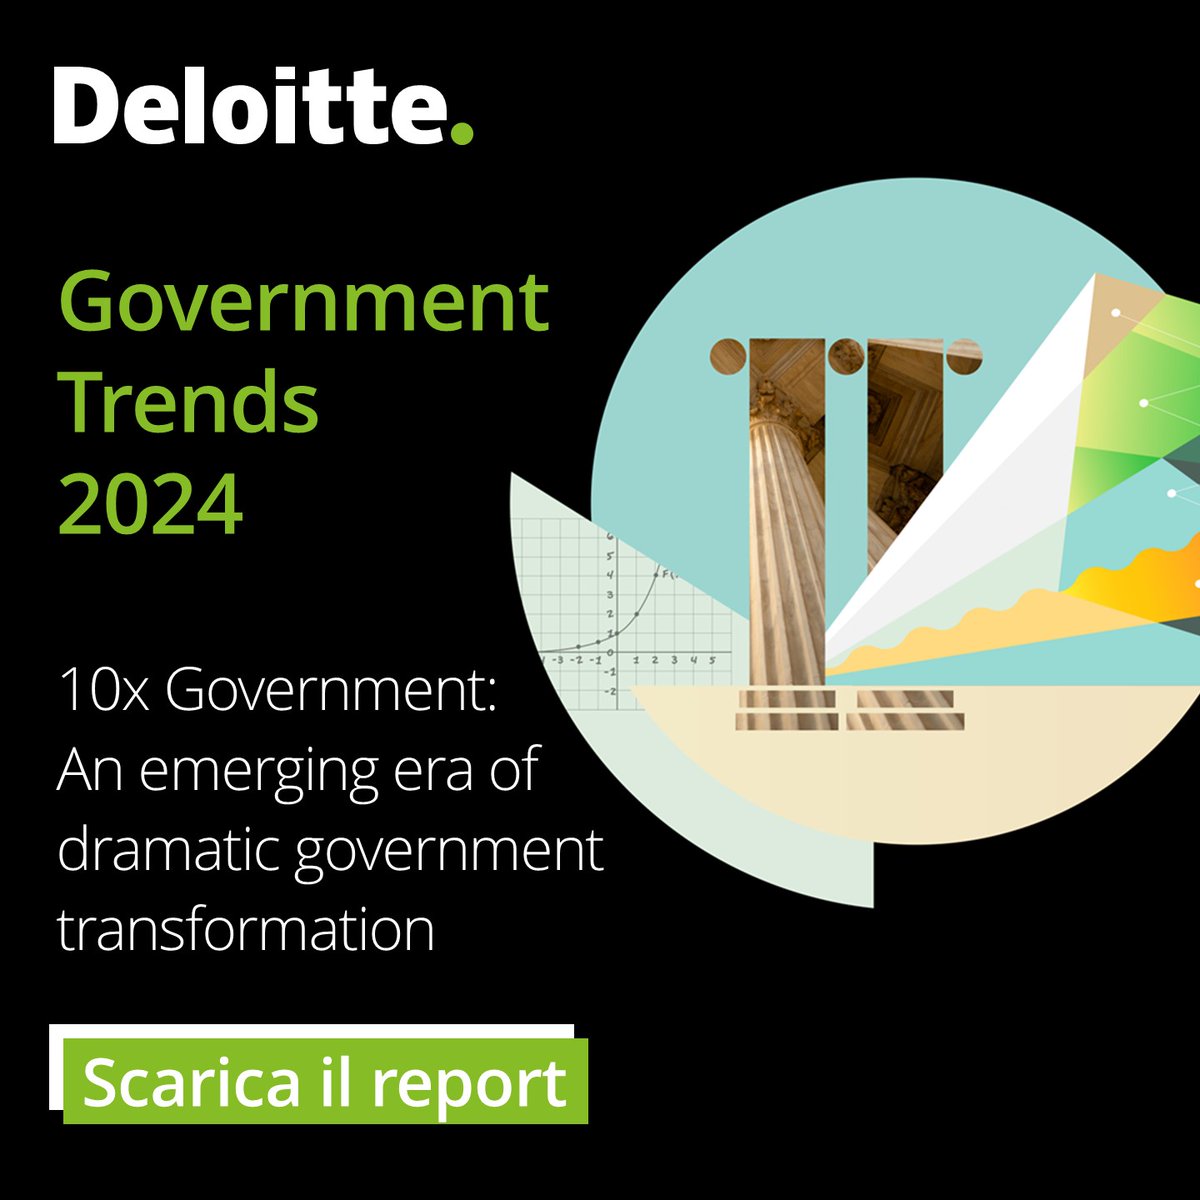 Nel nuovo report Government Trends 2024, le strategie dei governi a livello internazionale per il miglioramento dell’offerta dei servizi verso i cittadini. Scopri di più: deloi.tt/4cQSAc9 &utm_medium=organic&utm_campaign=government-trends-2024 #Government #DeloitteItalia